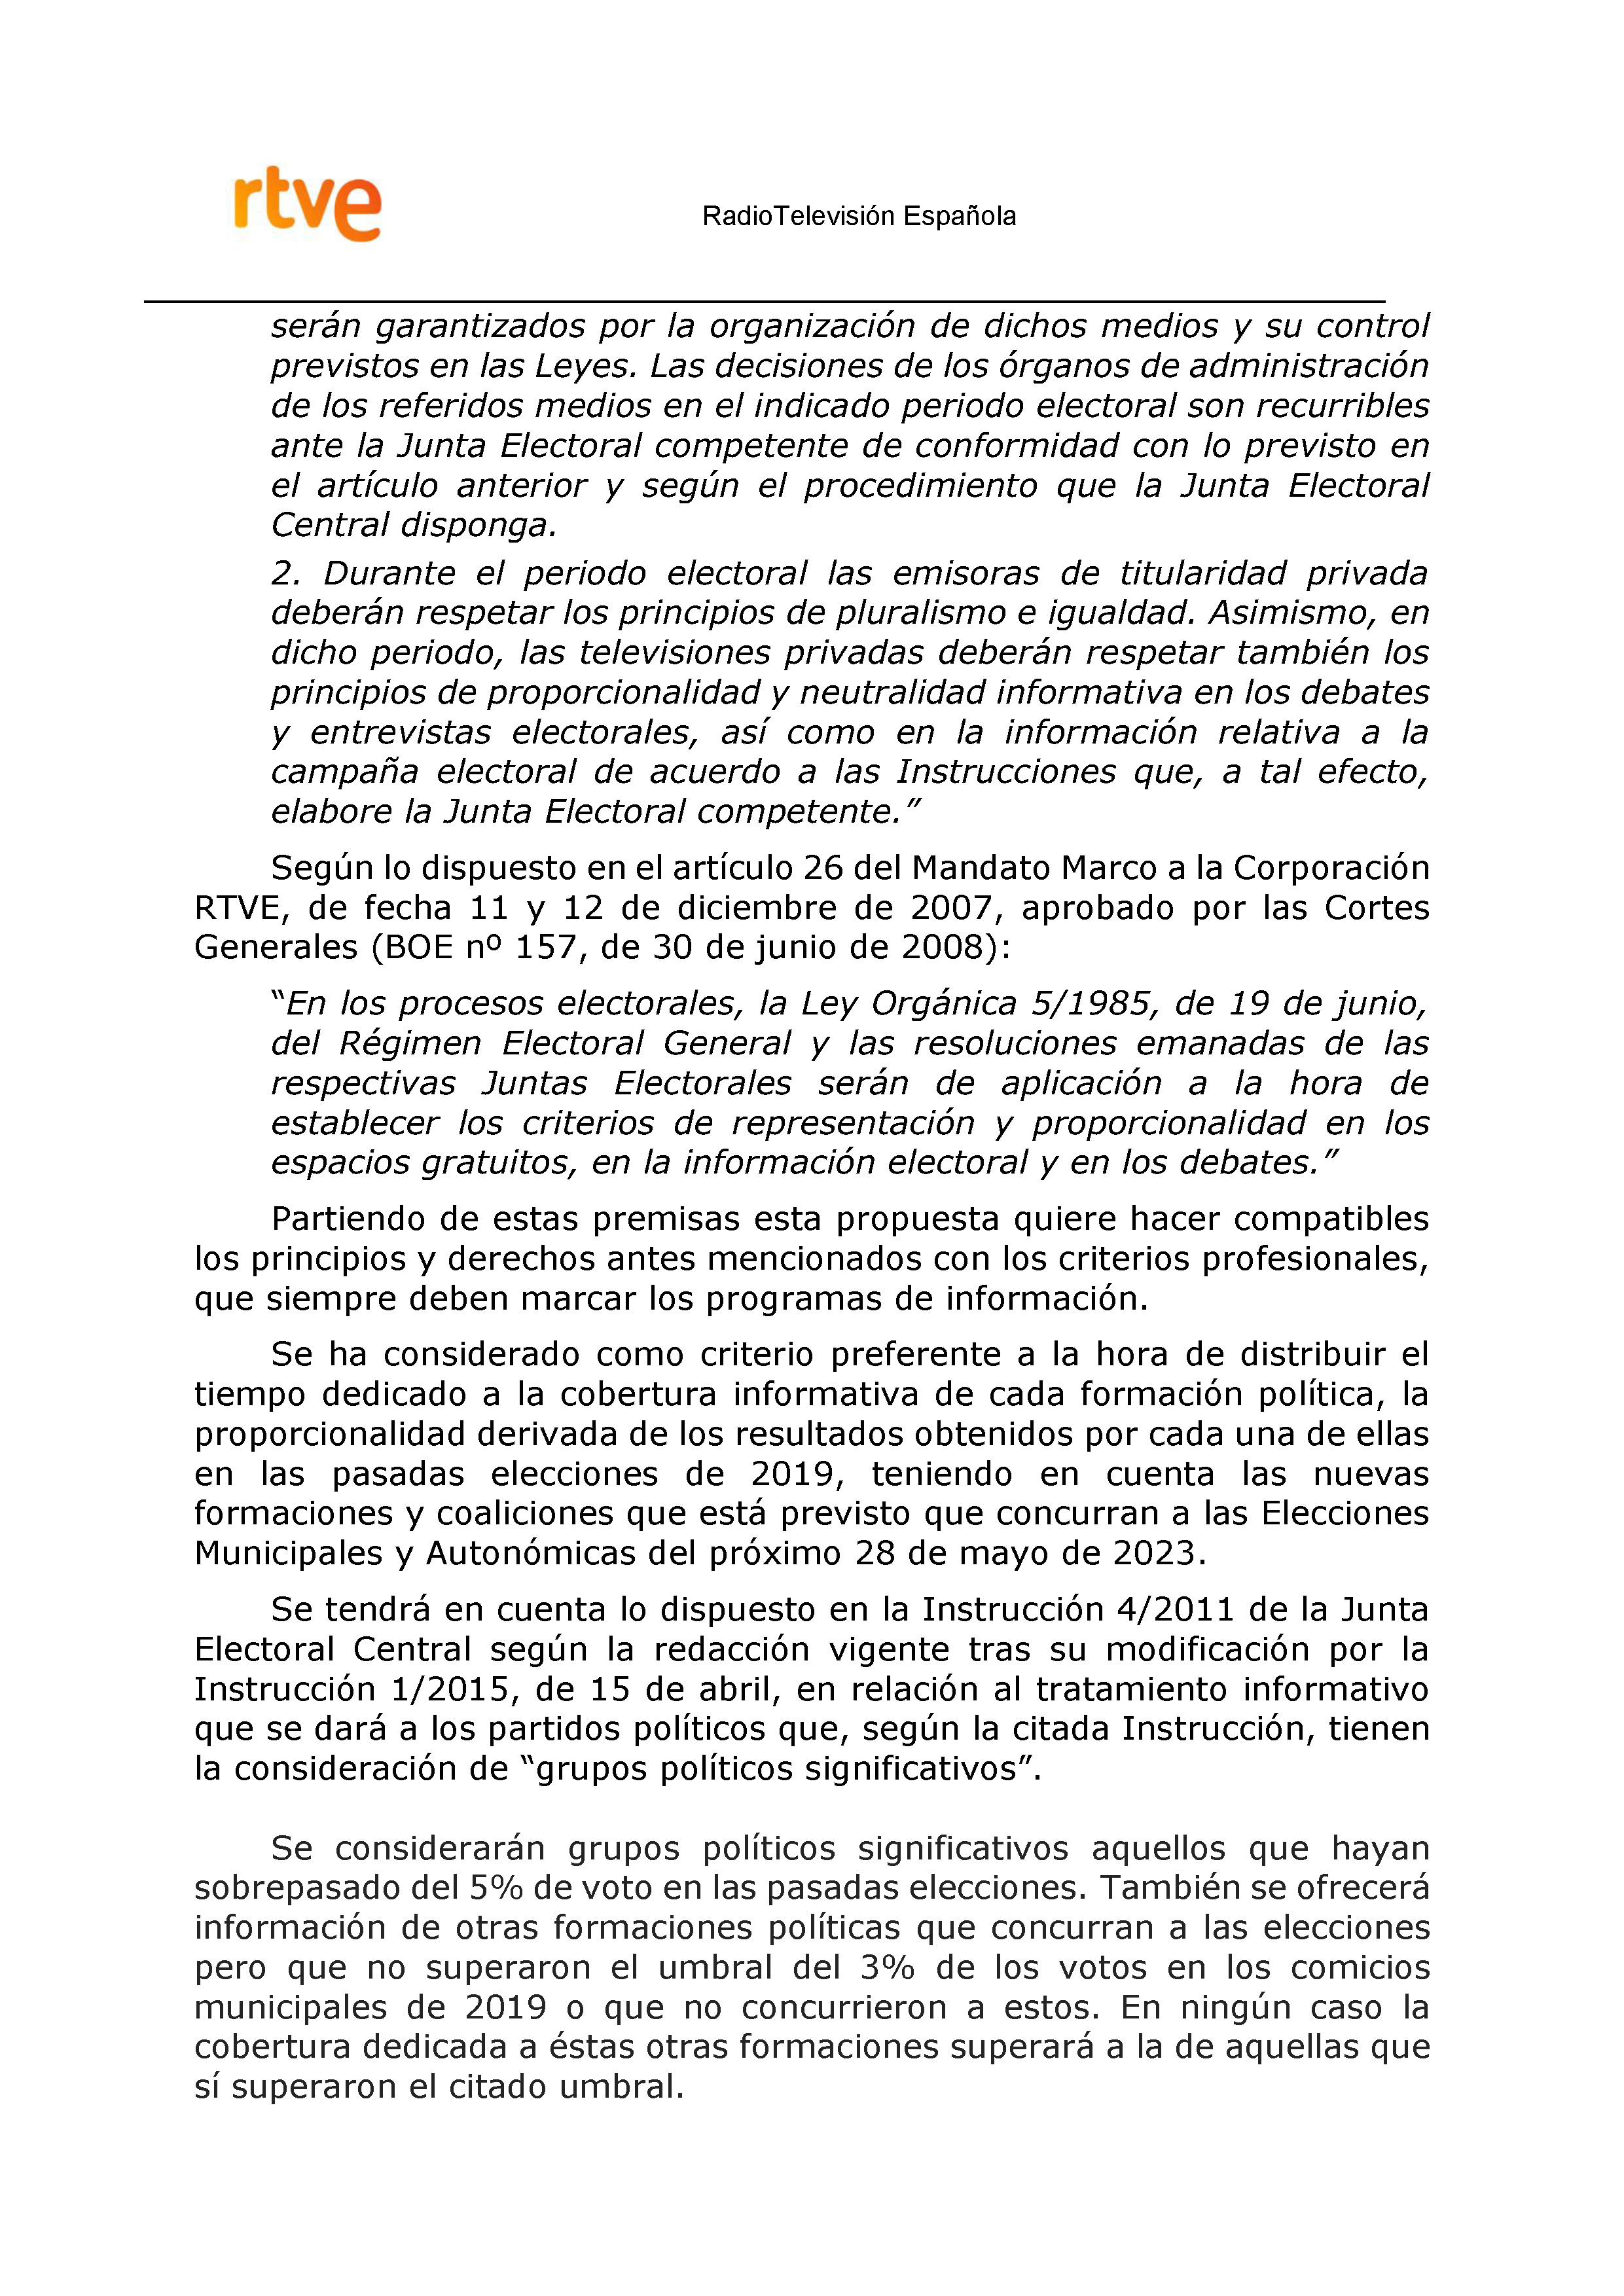 PLAN DE COBERTURA INFORMATIVA RTVE EN EXTREMADURA Pag 3